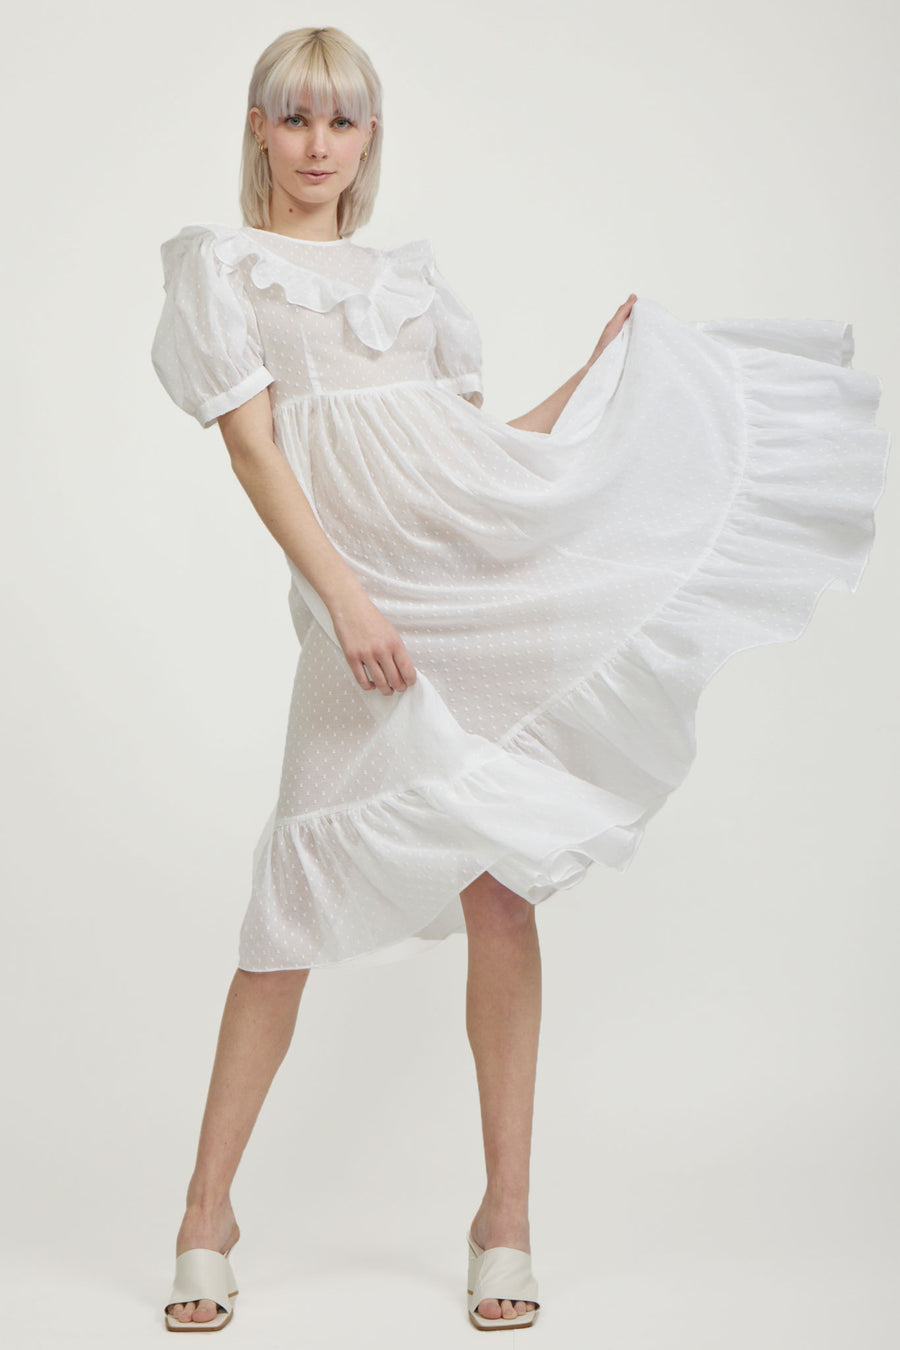 BATSHEVA - May Dress in White Swiss Dot